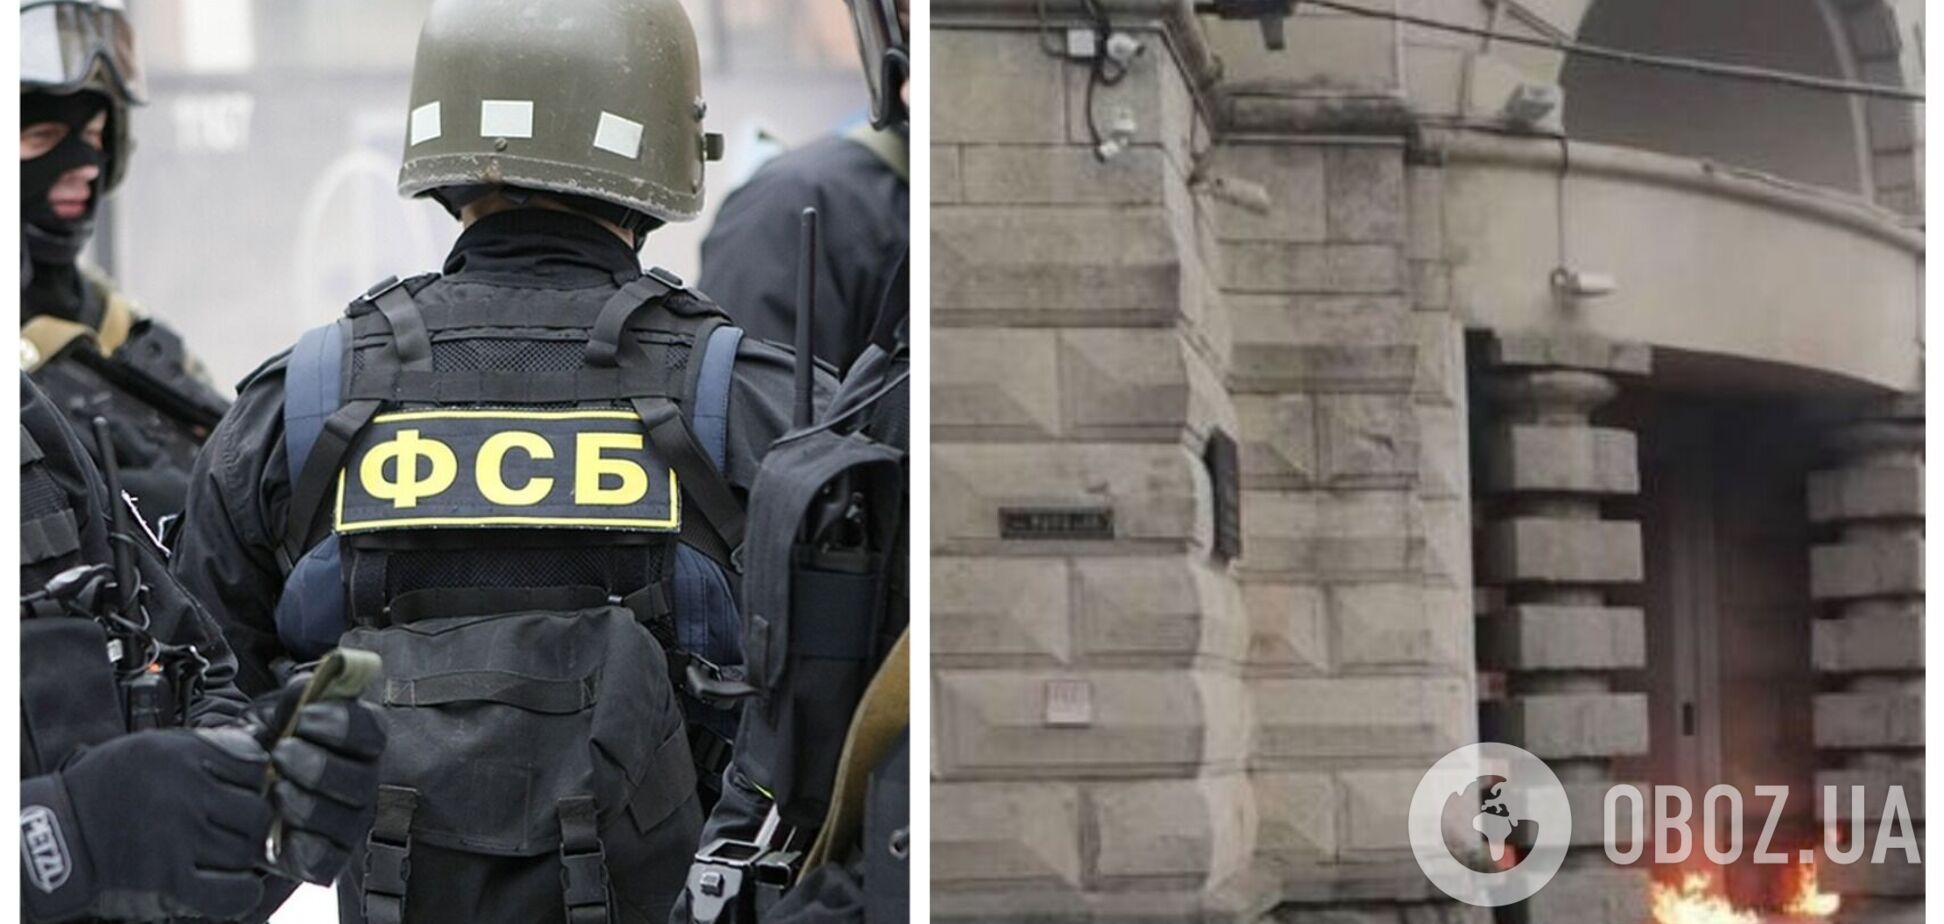 В Краснодаре мужчина бросил 'коктейль Молотова' в здание ФСБ, вспыхнул пожар. Фото